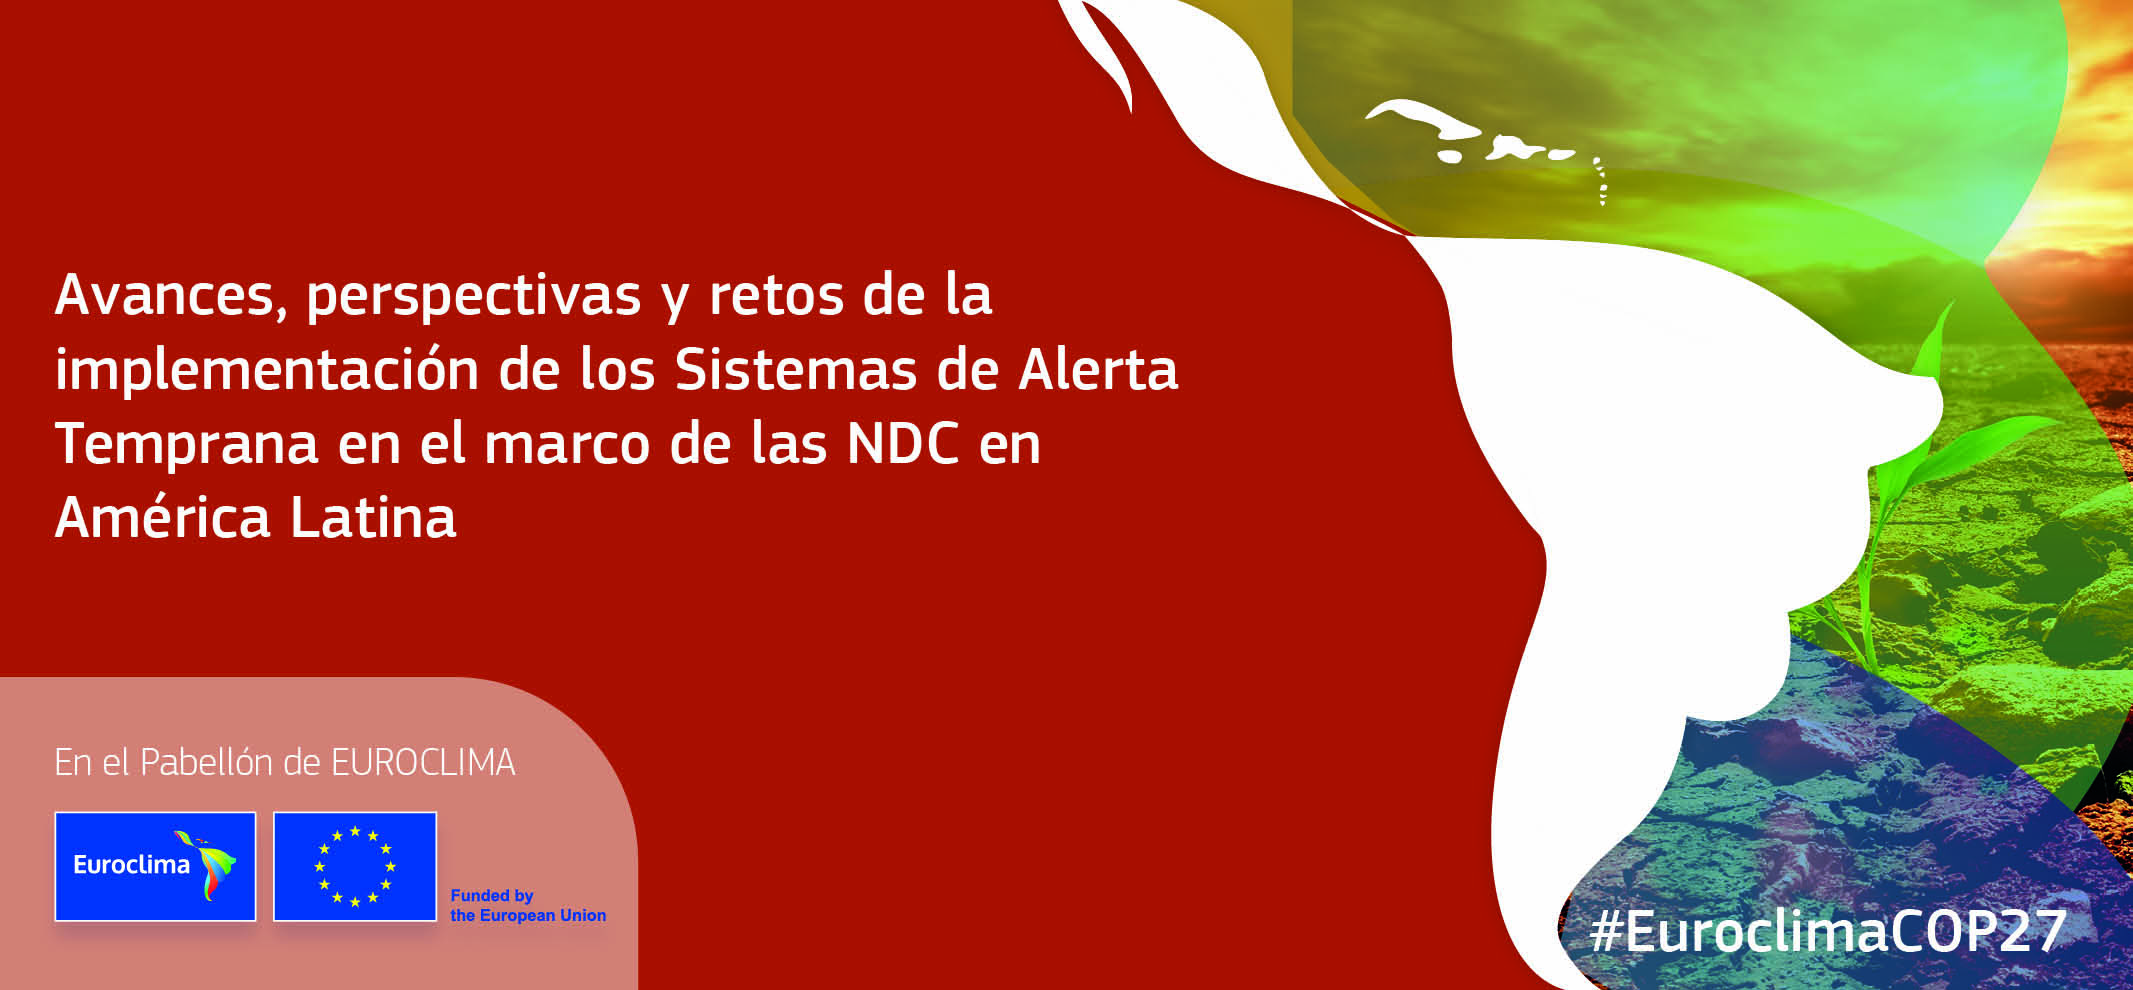 Avances perspectivas y retos de la implementacion de los Sistemas de Alerta Temprana en el marco de las NDC en America Latina